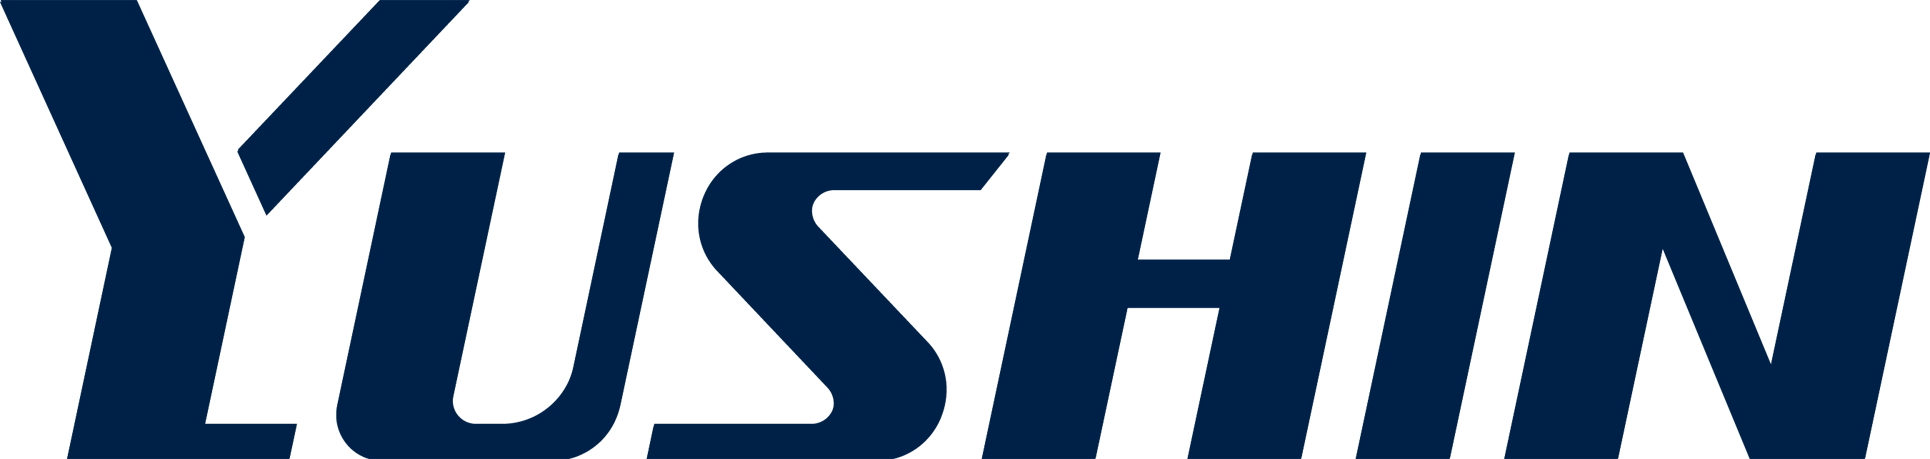 Yushin logo